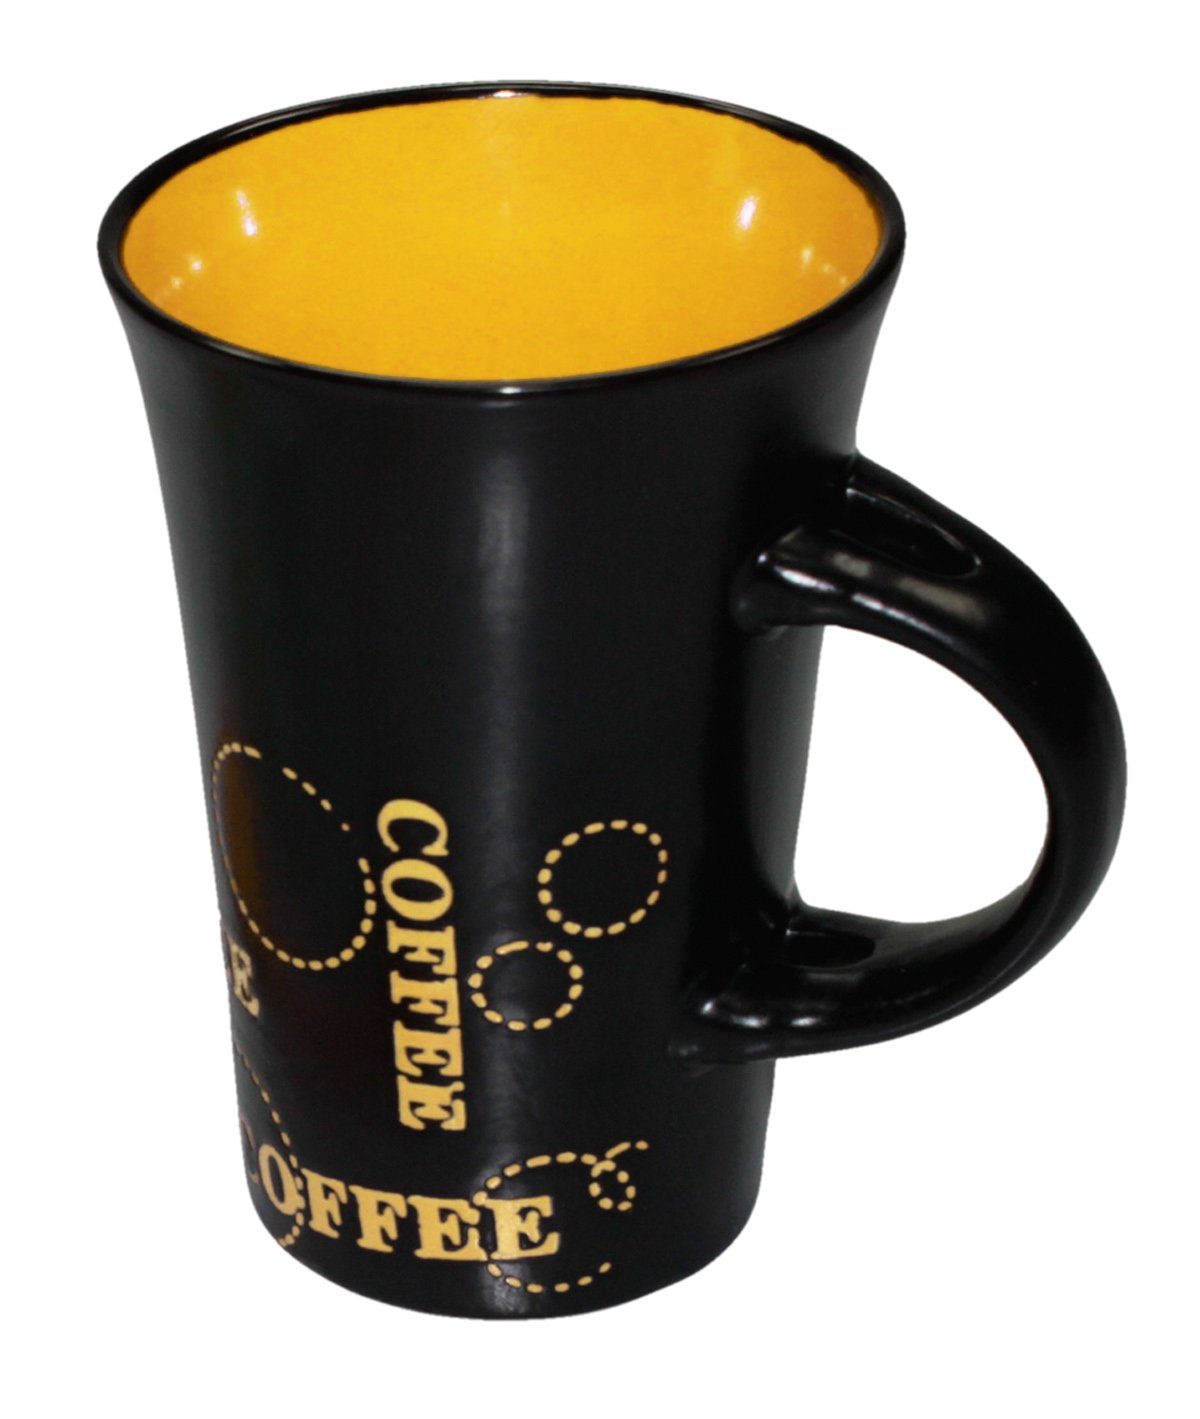 Haus und Deko Geschirr-Set Keramik Kaffeebecher Kaffeetasse schwarz bunt XL Tasse Becher passend (1-tlg), Keramik Gelb